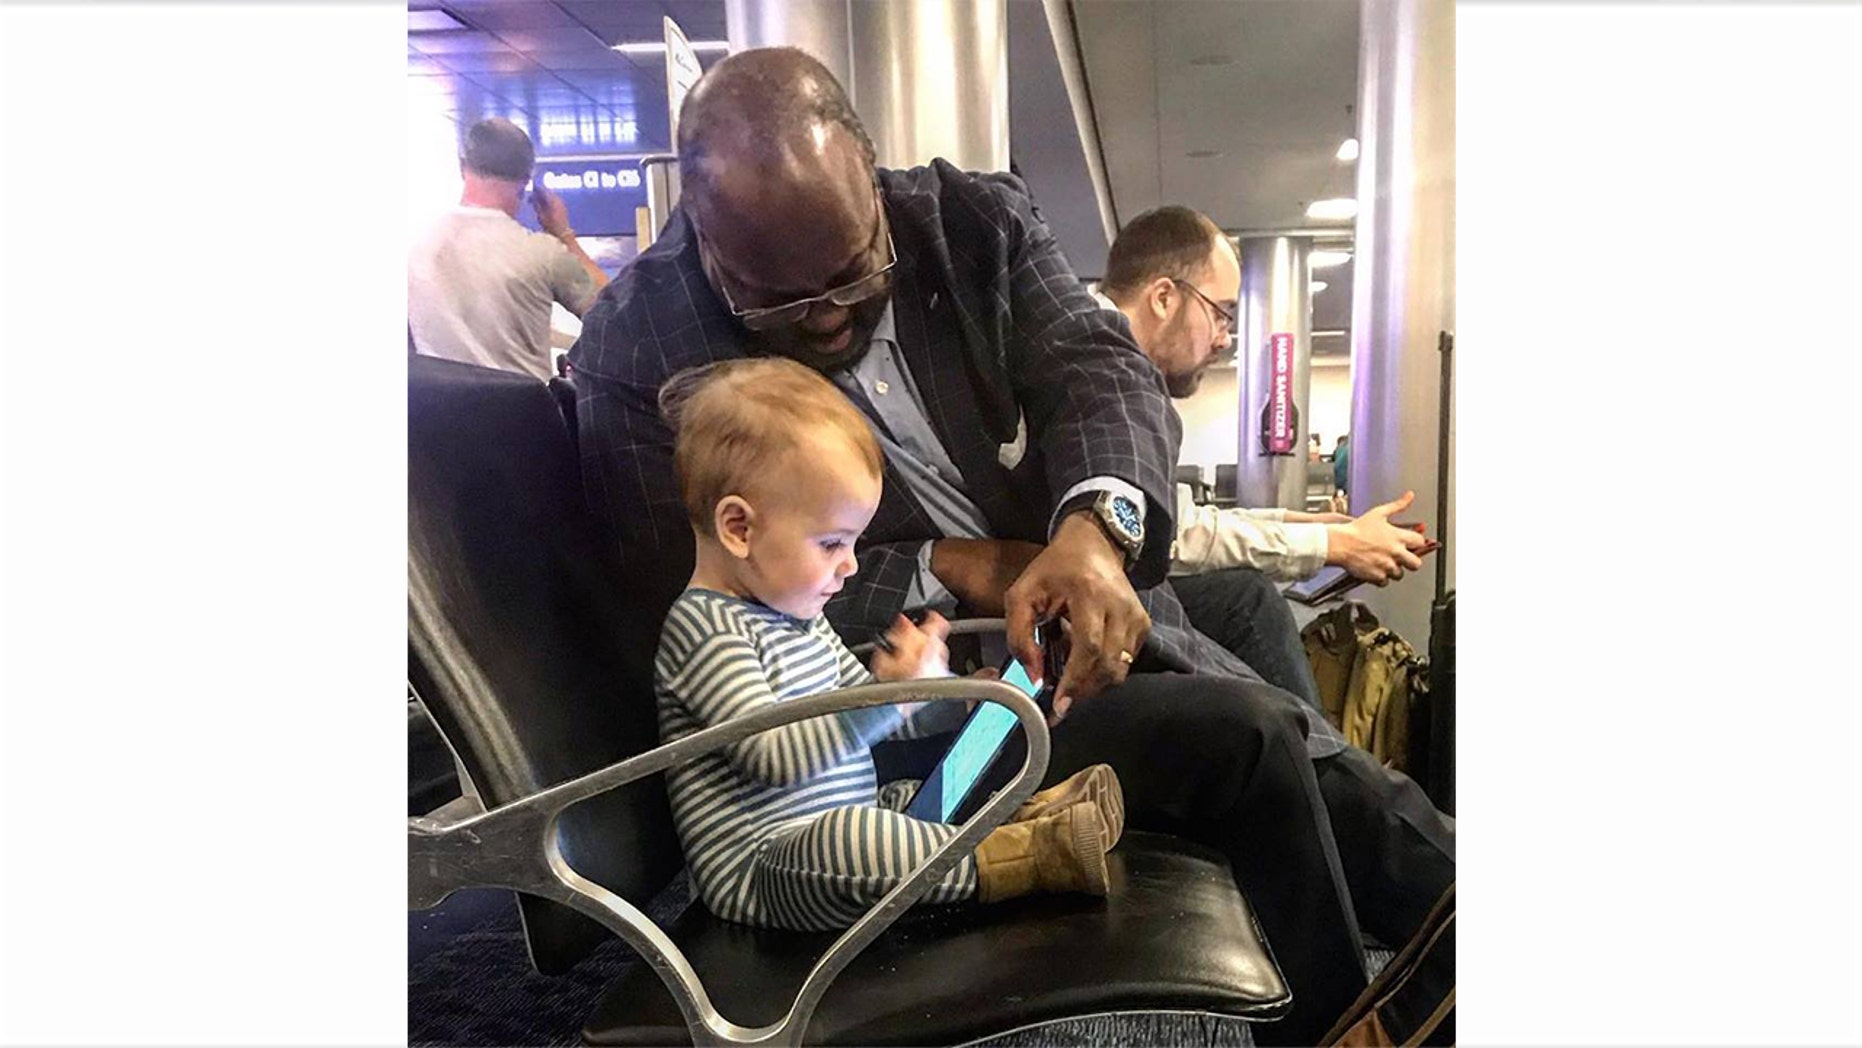 Photo of toddler, stranger bonding in airport goes viral